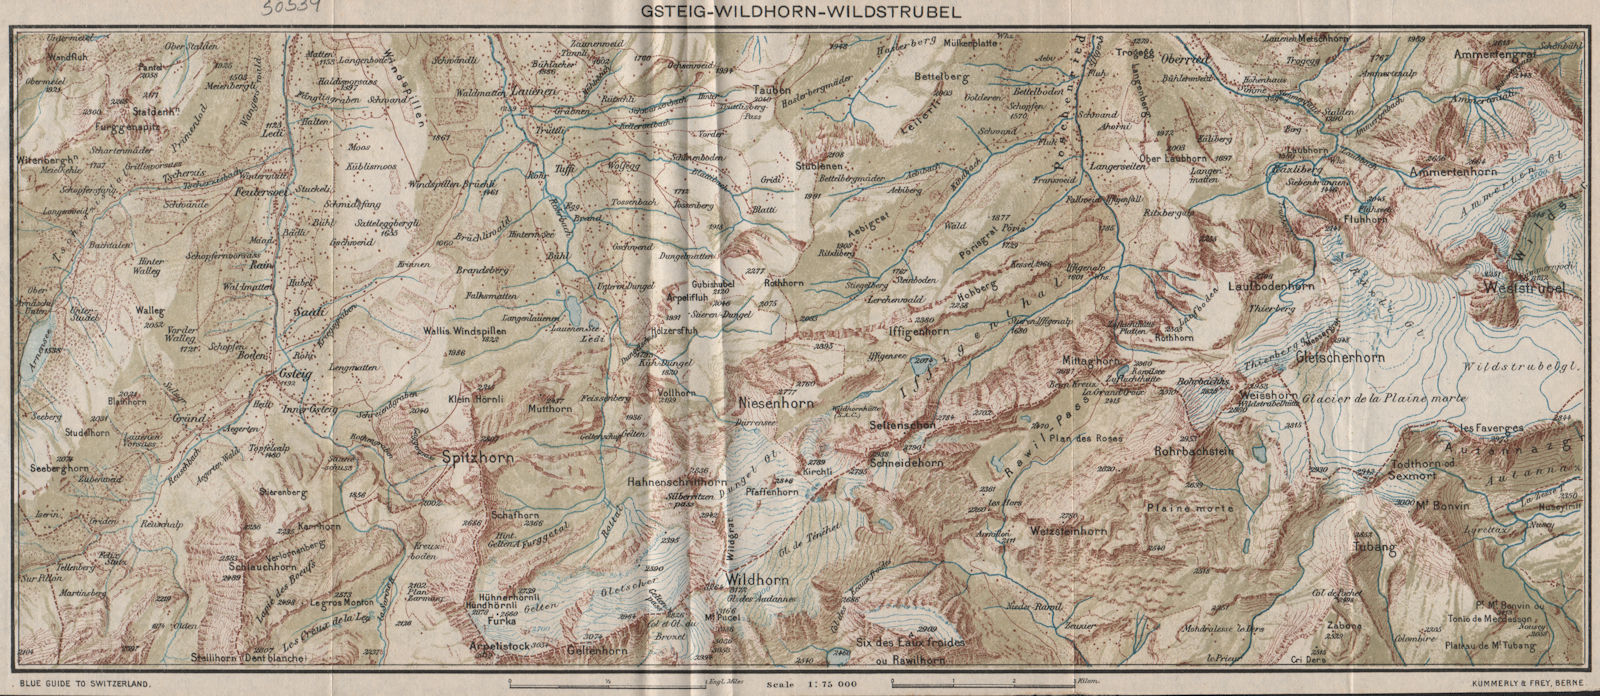 BERNER OBERLAND. Gsteig Wildhorn Wildstrudel Lauenen Spitzhorn. Vintage map 1930